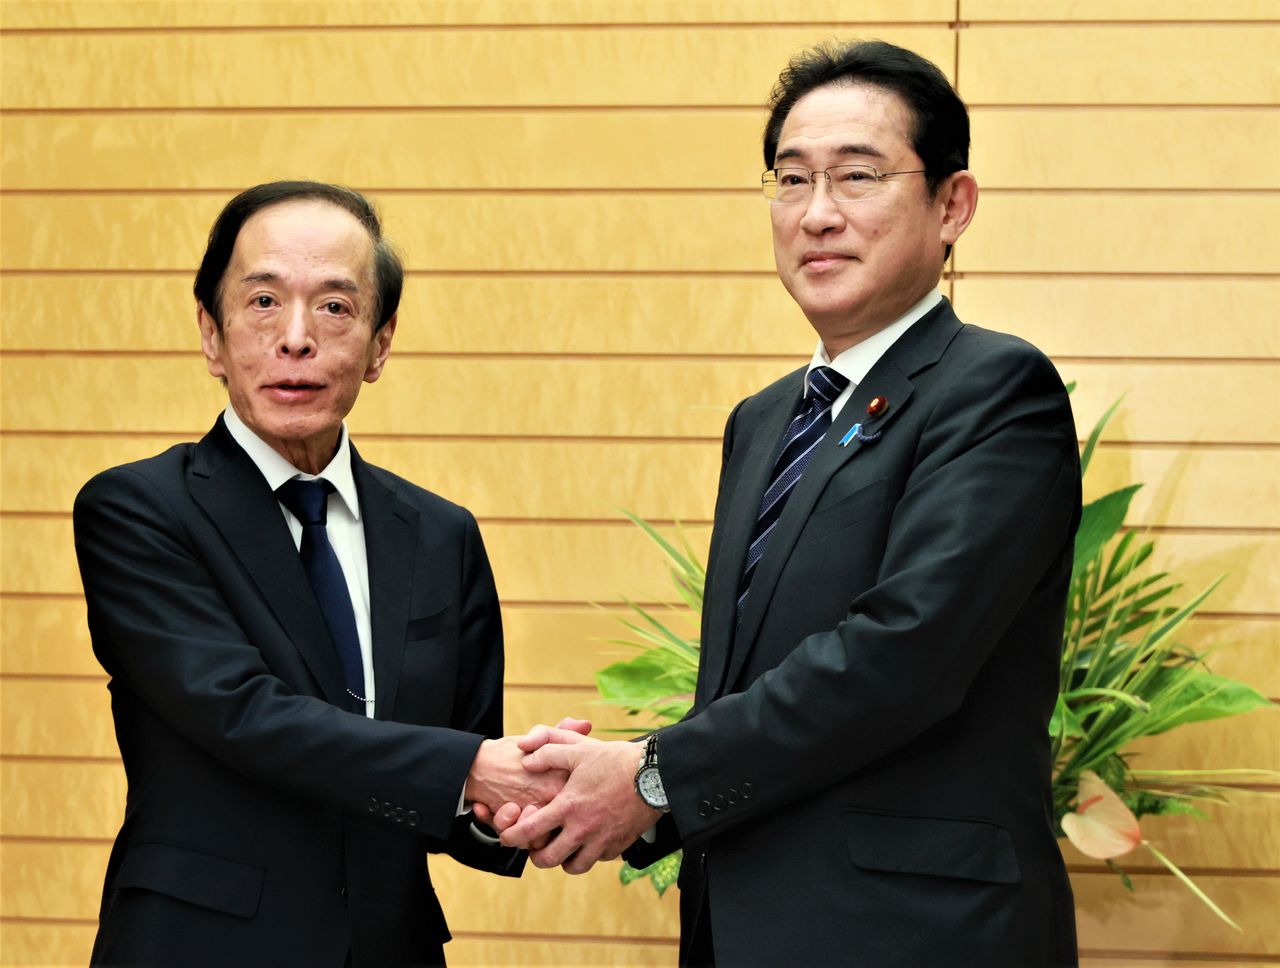 Рукопожатие Уэды Кадзуо (слева) и премьер-министра Кисиды Фумио после вручения приказа о назначении (© Jiji Press)